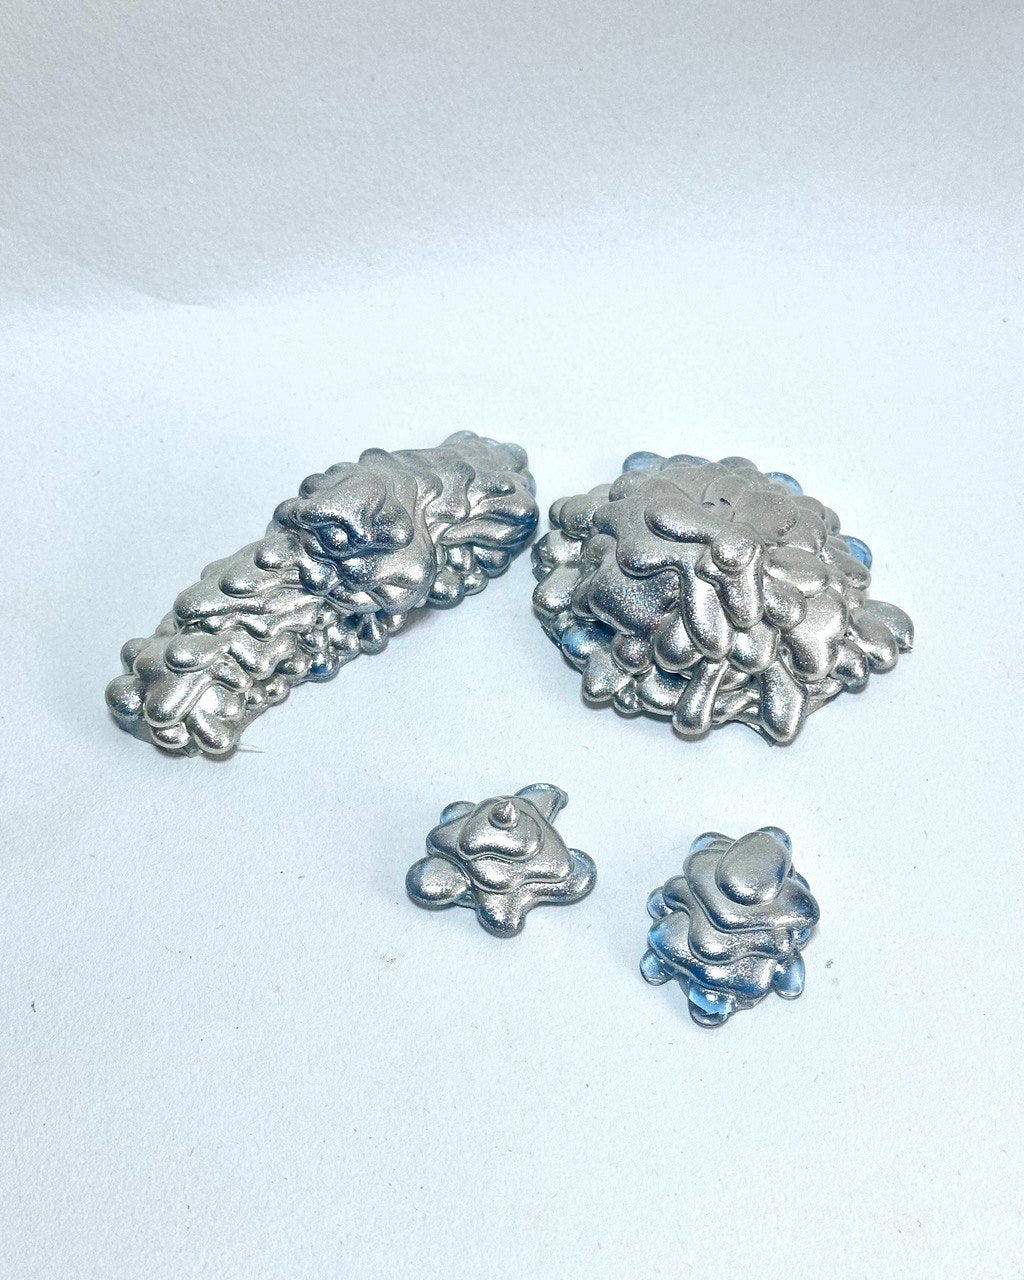 Silicone Molds - Unique 4-Piece Melting Glacier Set